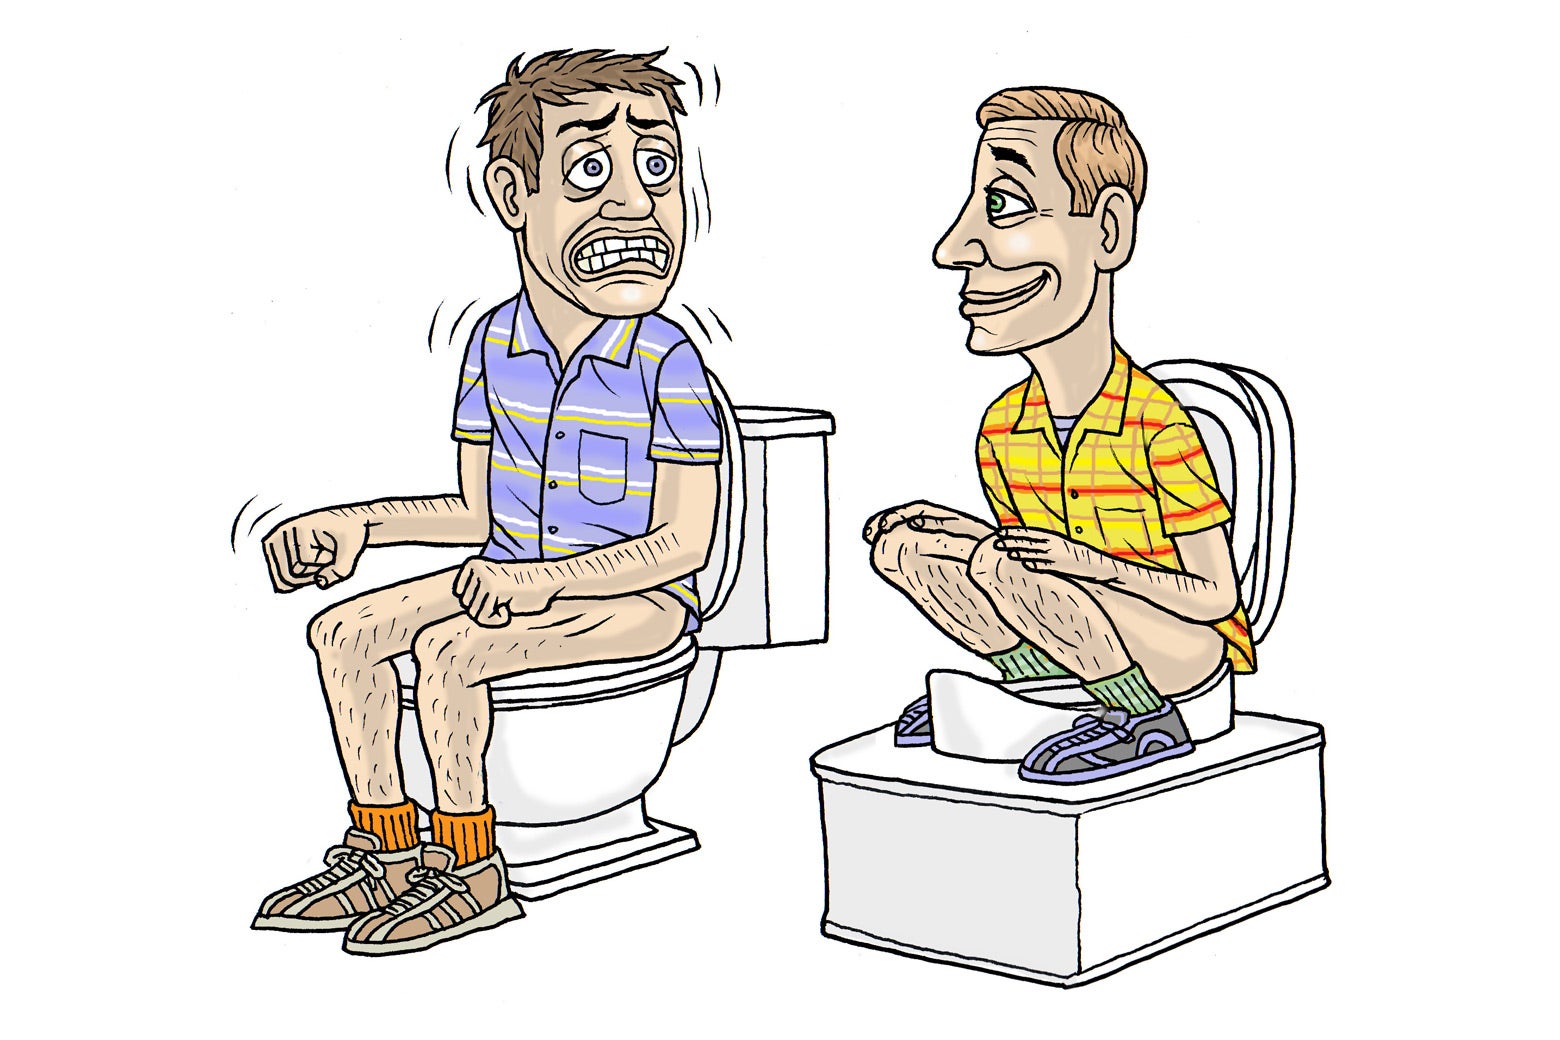 Мужчина сидит в туалете. Сидит на унитазе. Унитаз.